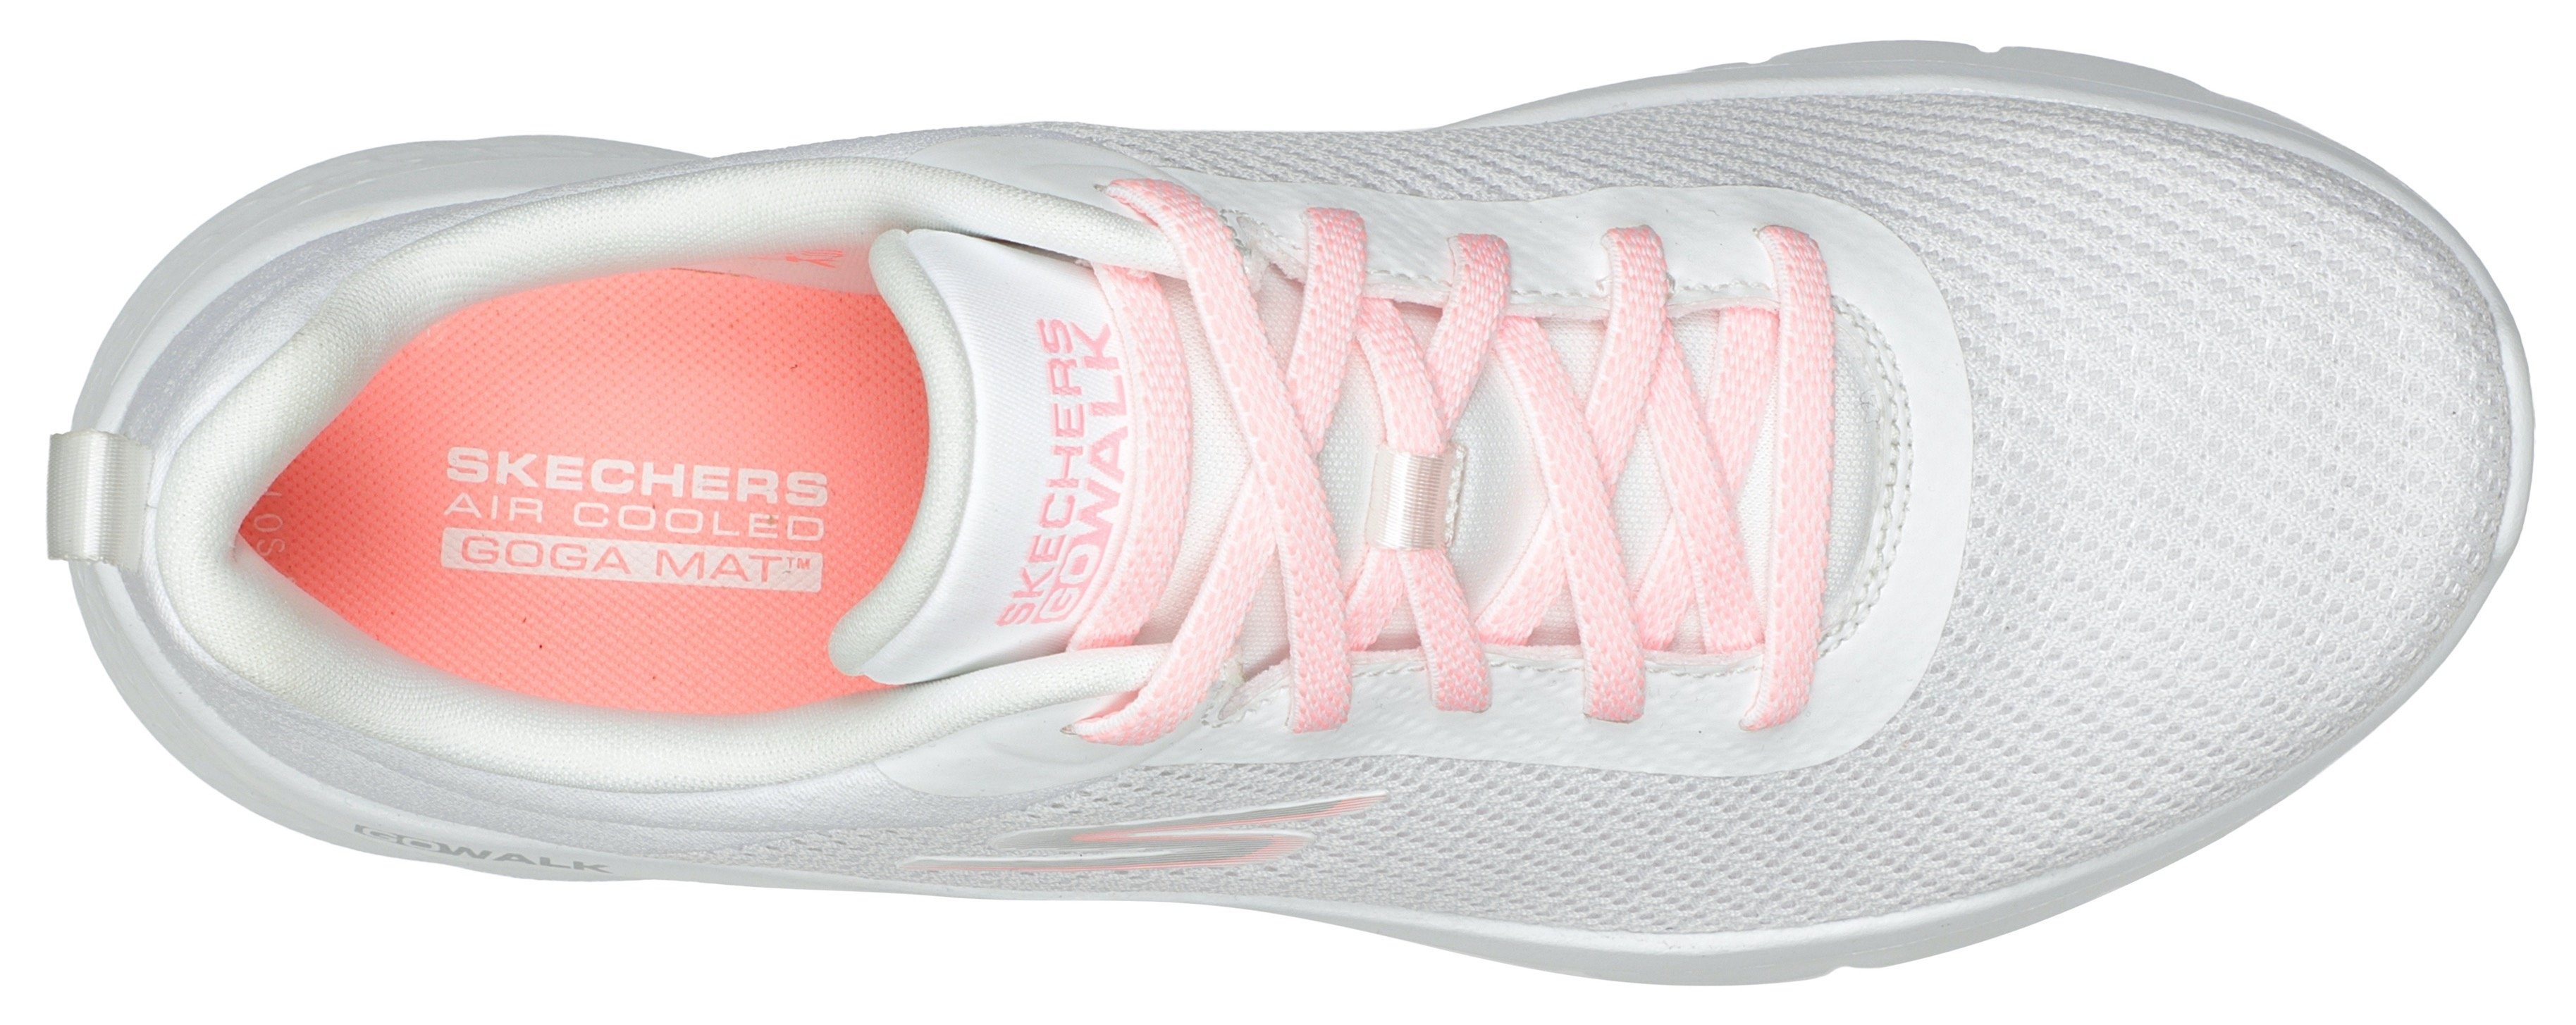 Skechers GO WALK FLEX Sneaker Slip-On weiß-rosa Maschinenwäsche ALANI geeignet für